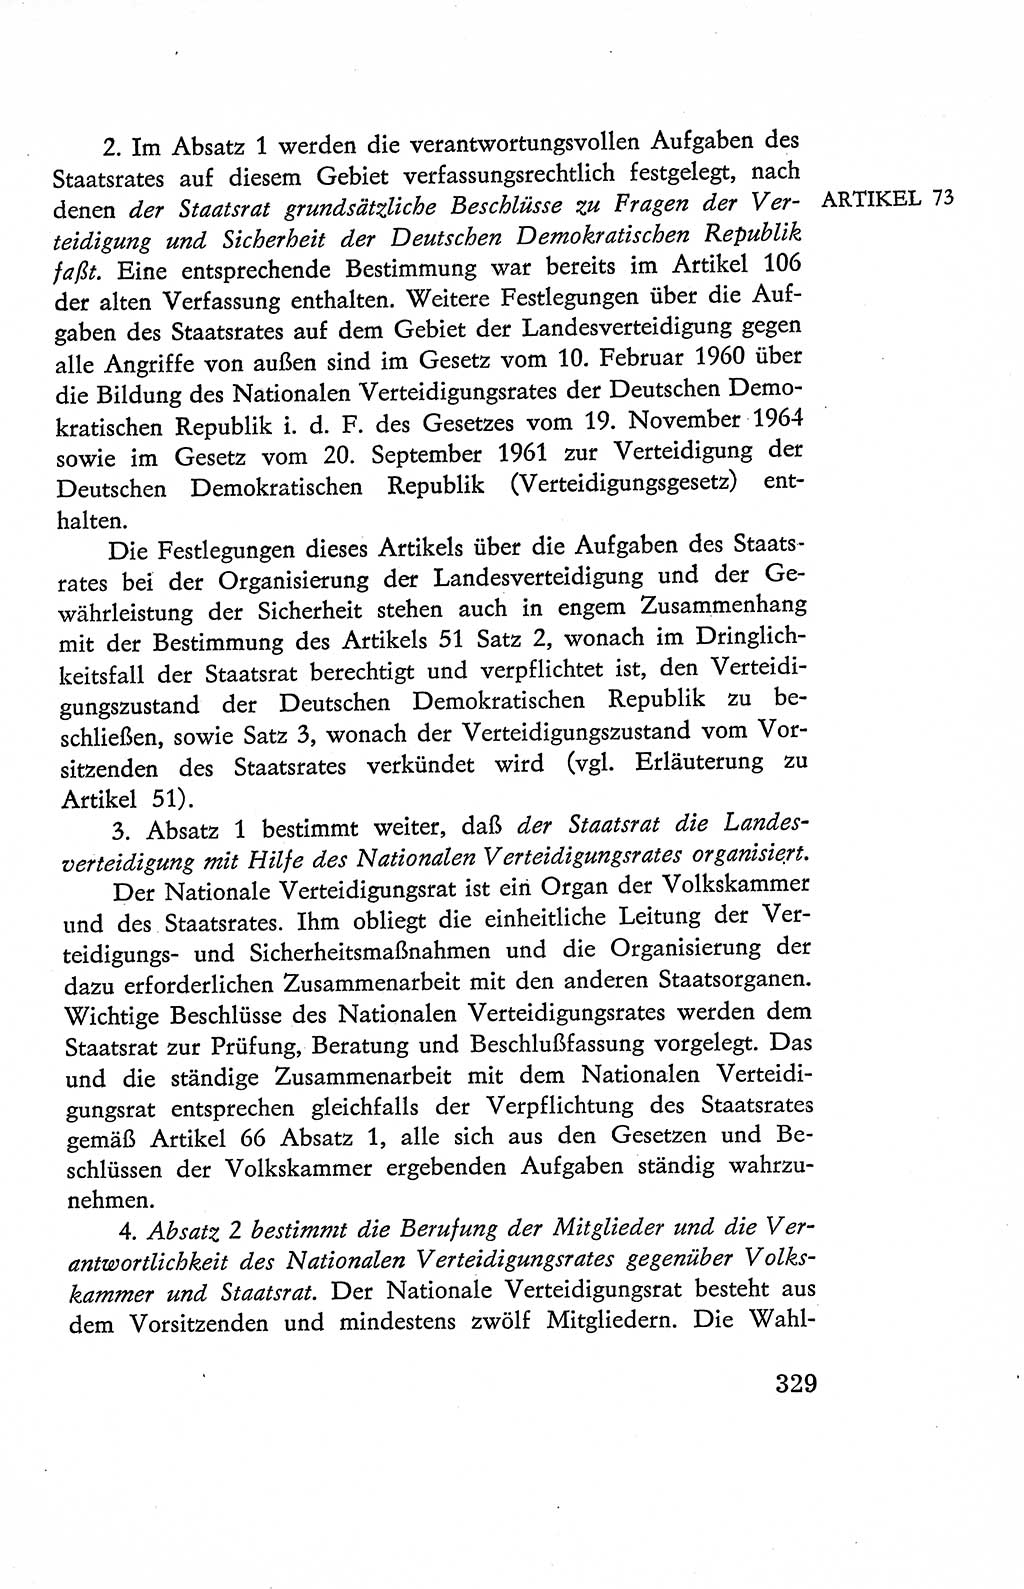 Verfassung der Deutschen Demokratischen Republik (DDR), Dokumente, Kommentar 1969, Band 2, Seite 329 (Verf. DDR Dok. Komm. 1969, Bd. 2, S. 329)